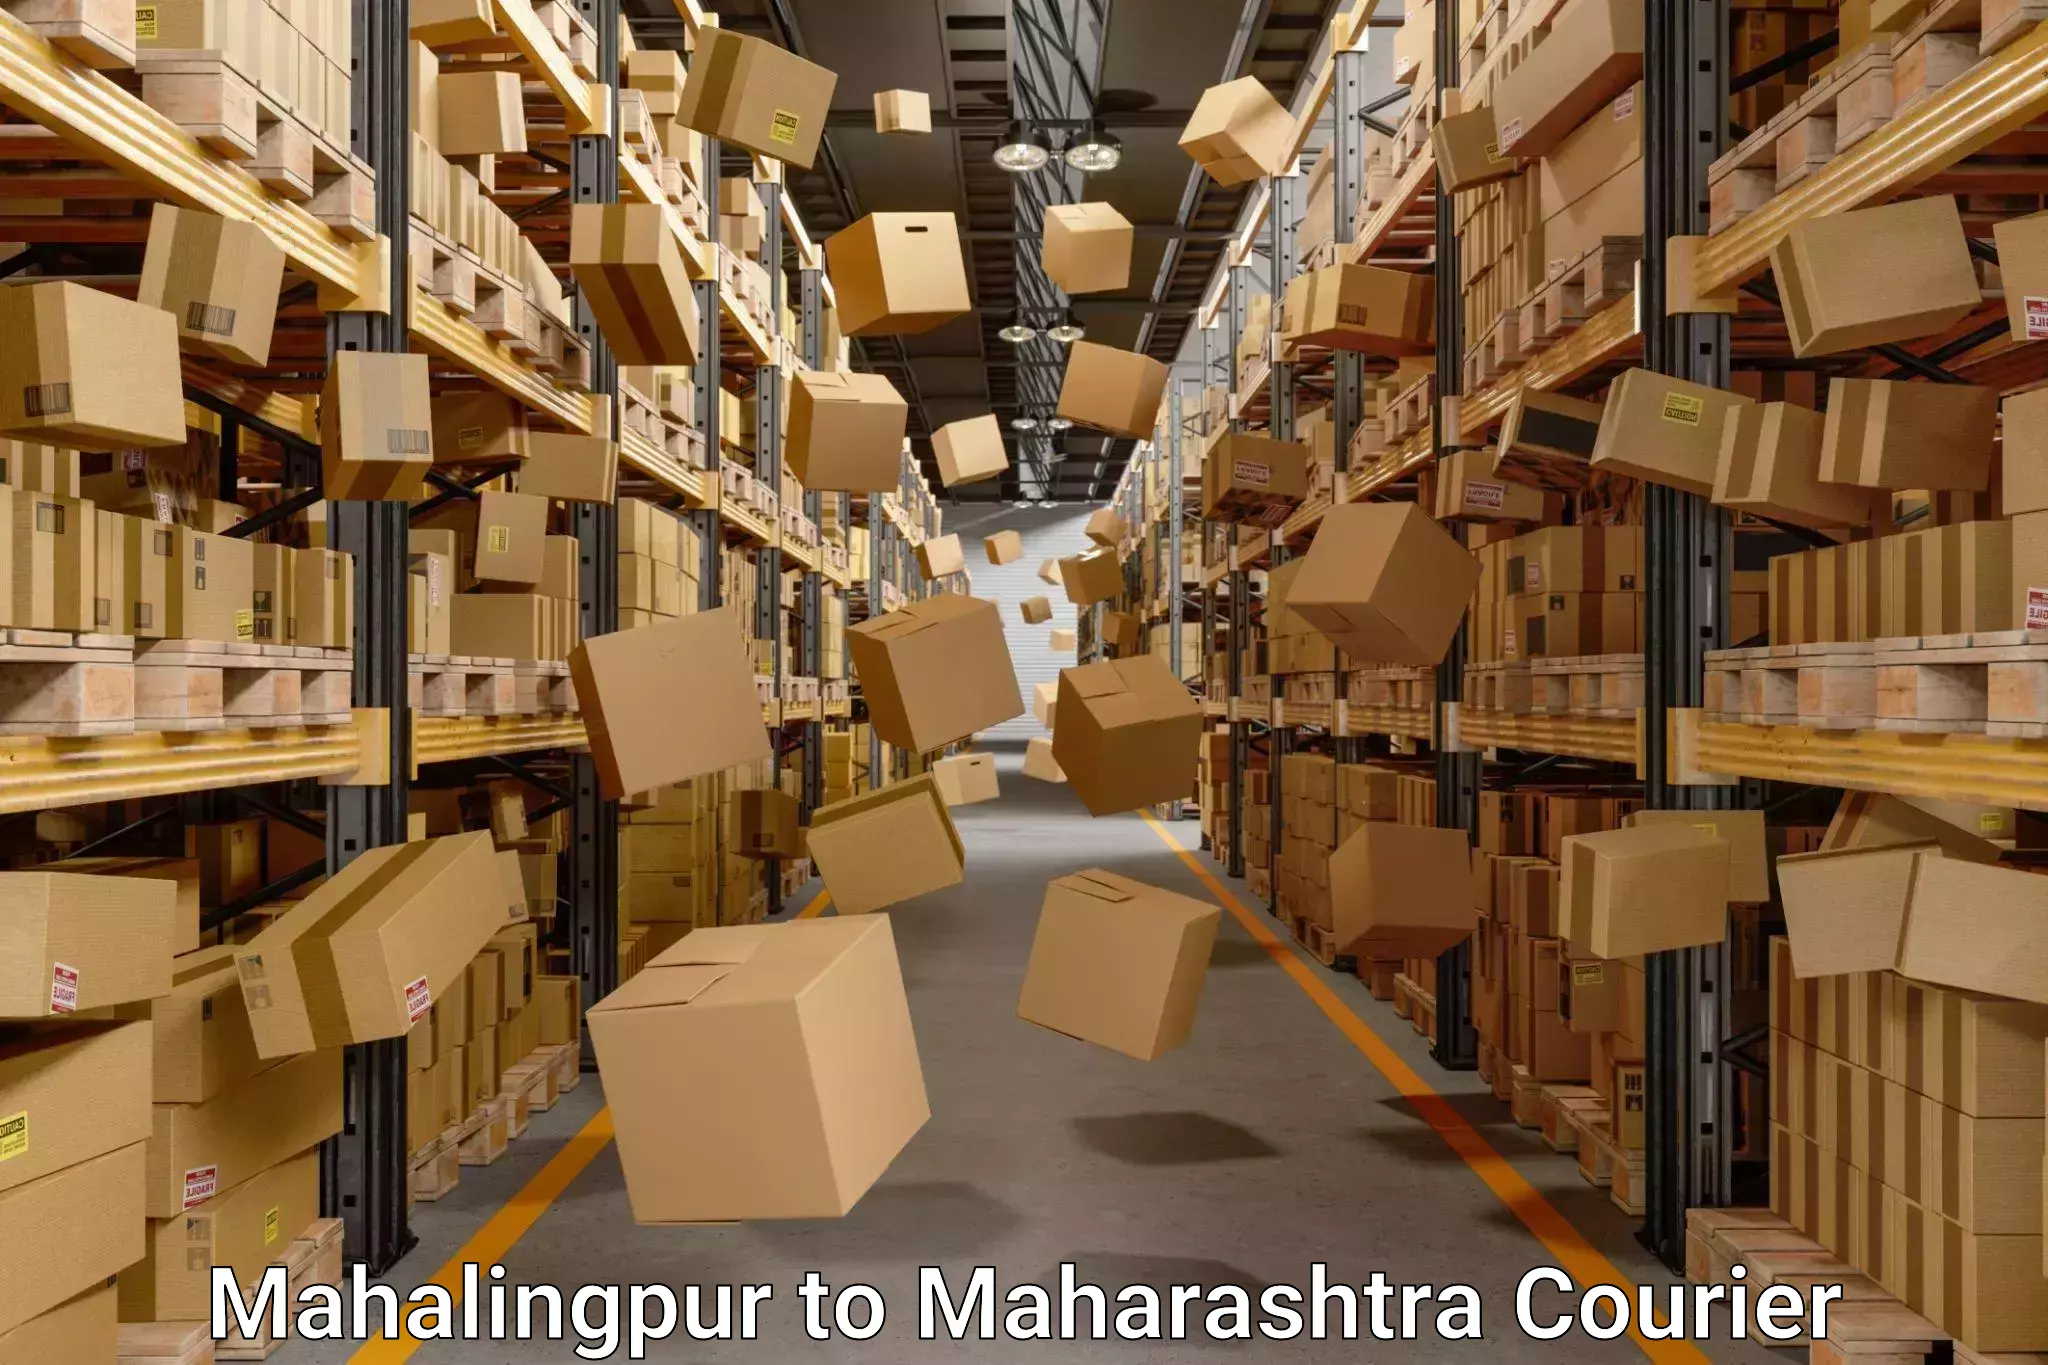 Home shifting experts Mahalingpur to Maharashtra